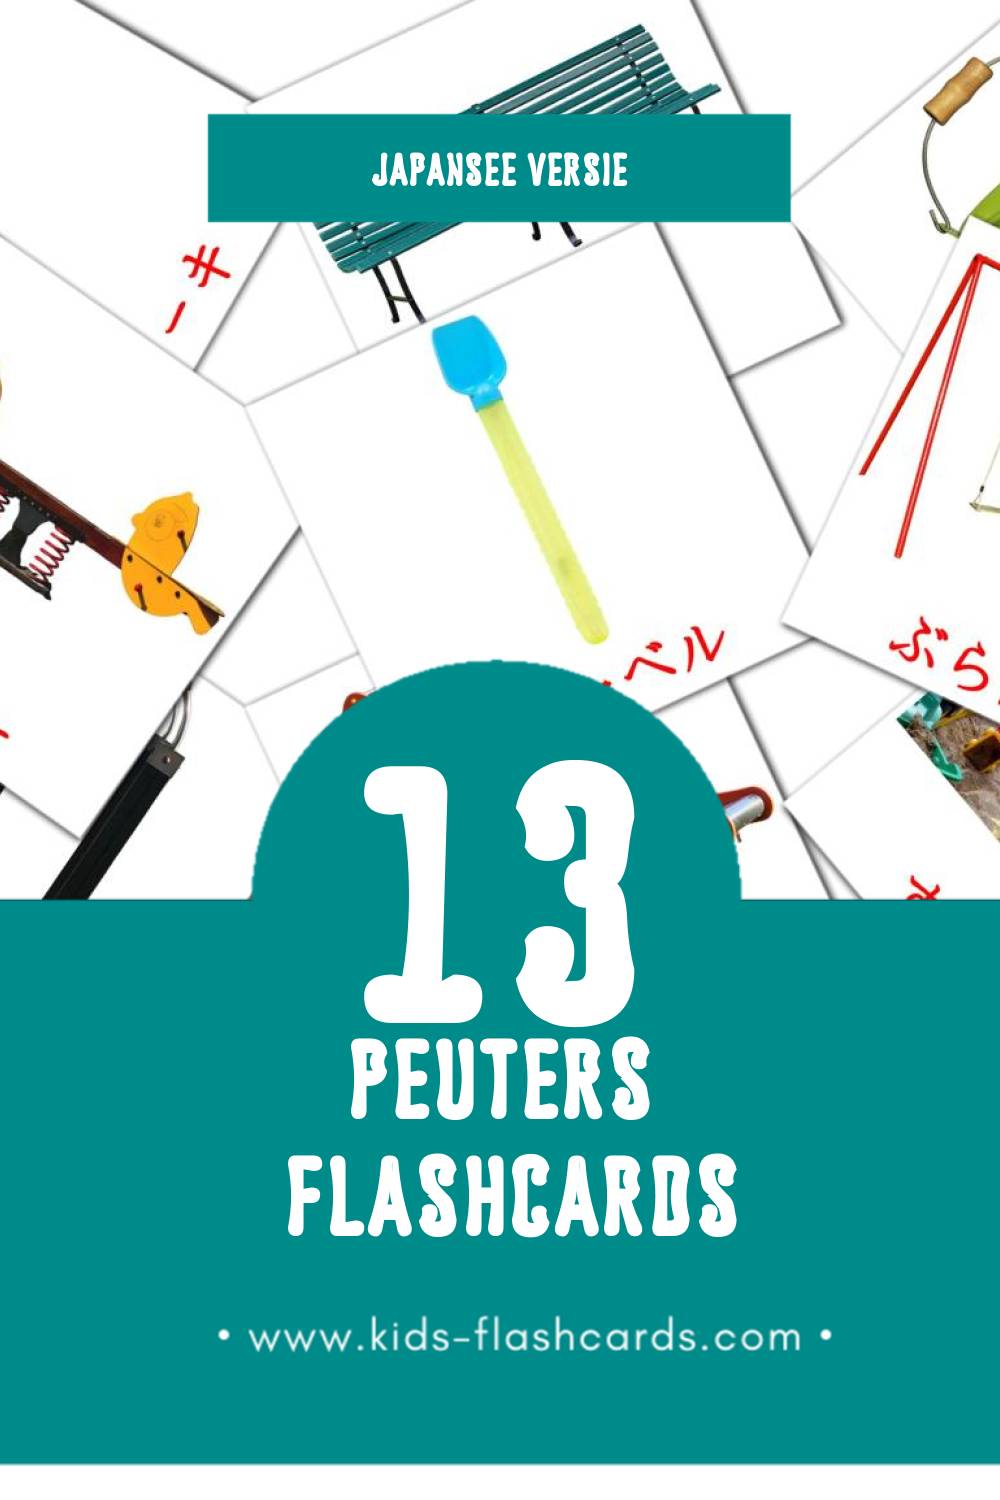 Visuele ベビー Flashcards voor Kleuters (13 kaarten in het Japanse)